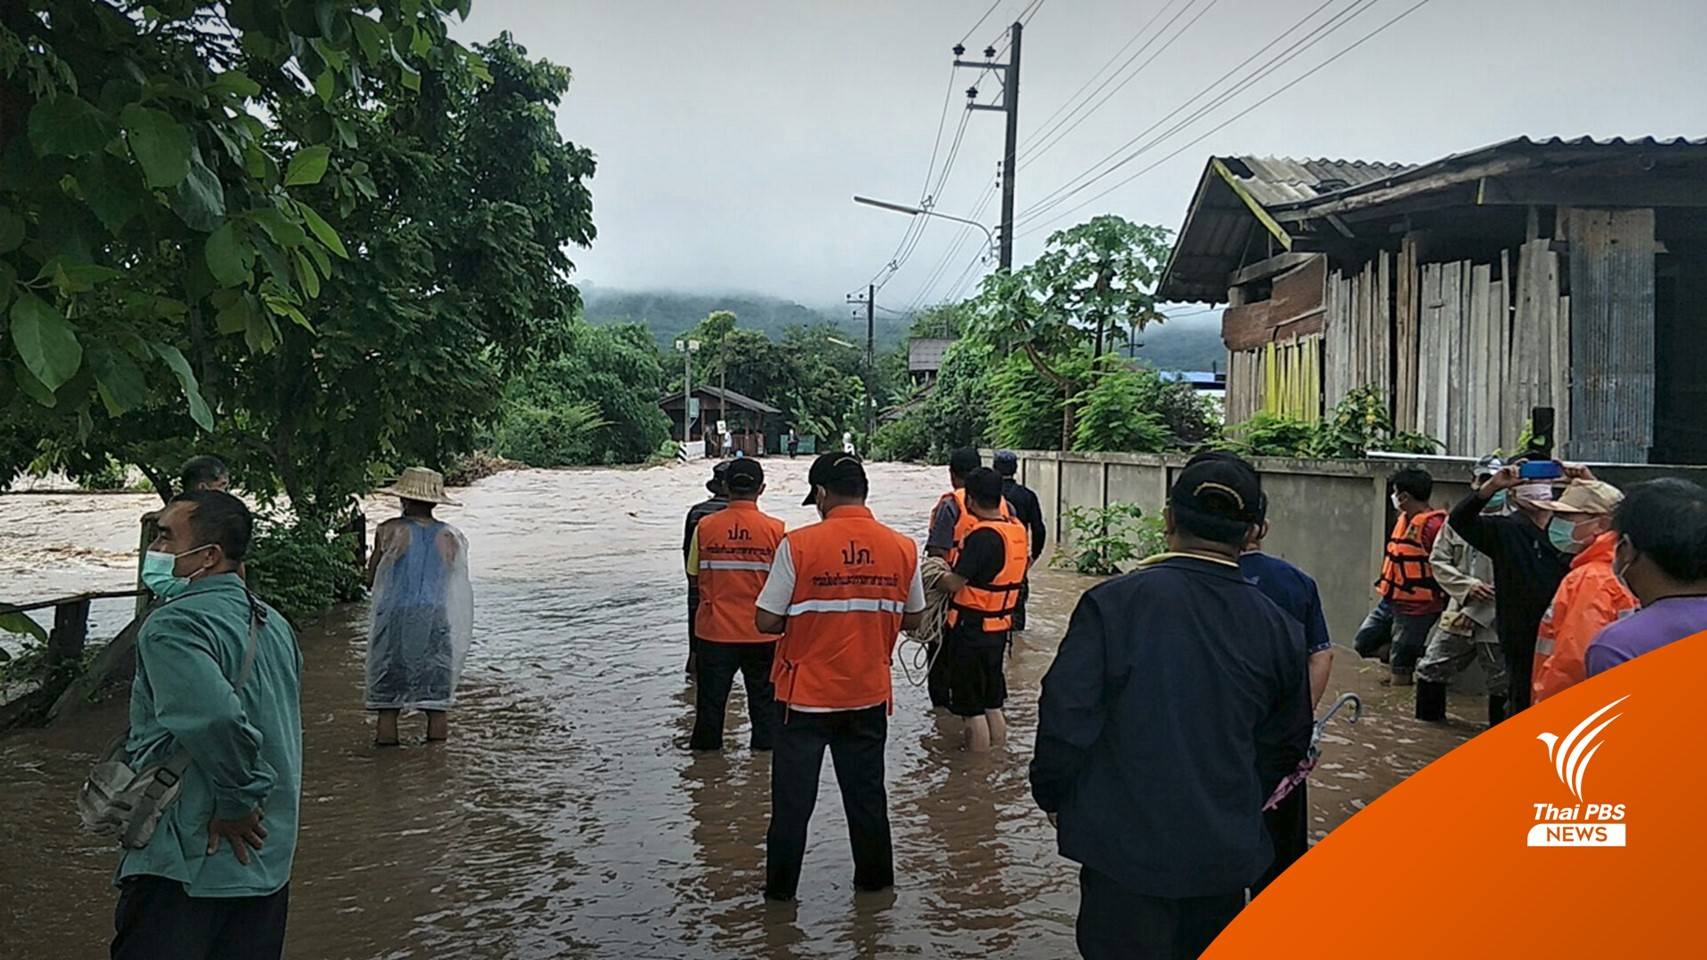 น้ำหลากท่วมหมู่บ้าน "นาน้อย-งาว" เร่งช่วยผู้ประสบภัย